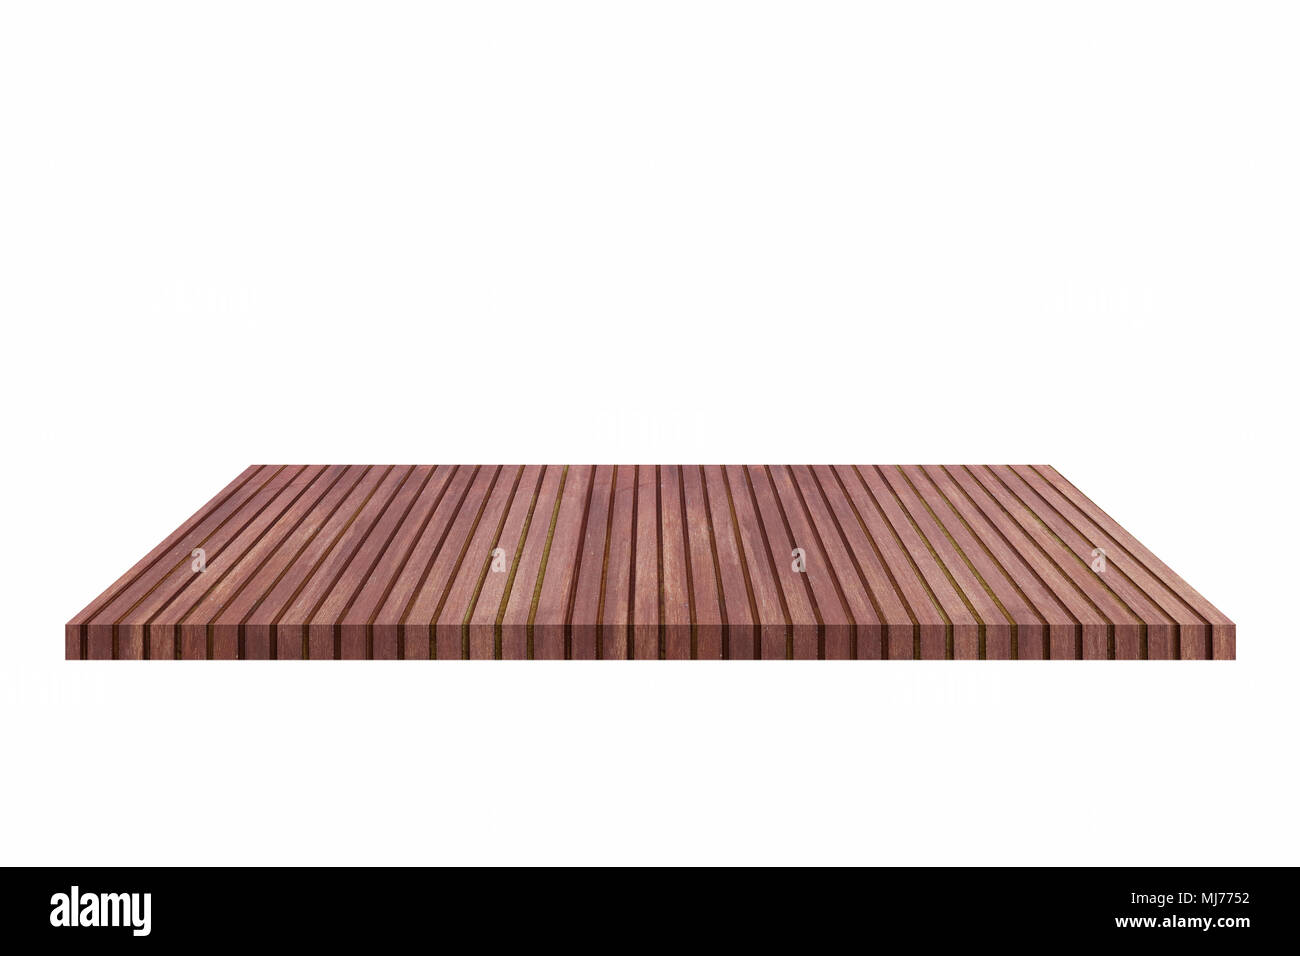 La parte superior de la tabla de madera aislado sobre fondo blanco - puede utilizarse para mostrar o montaje de sus productos (o alimentos) Foto de stock